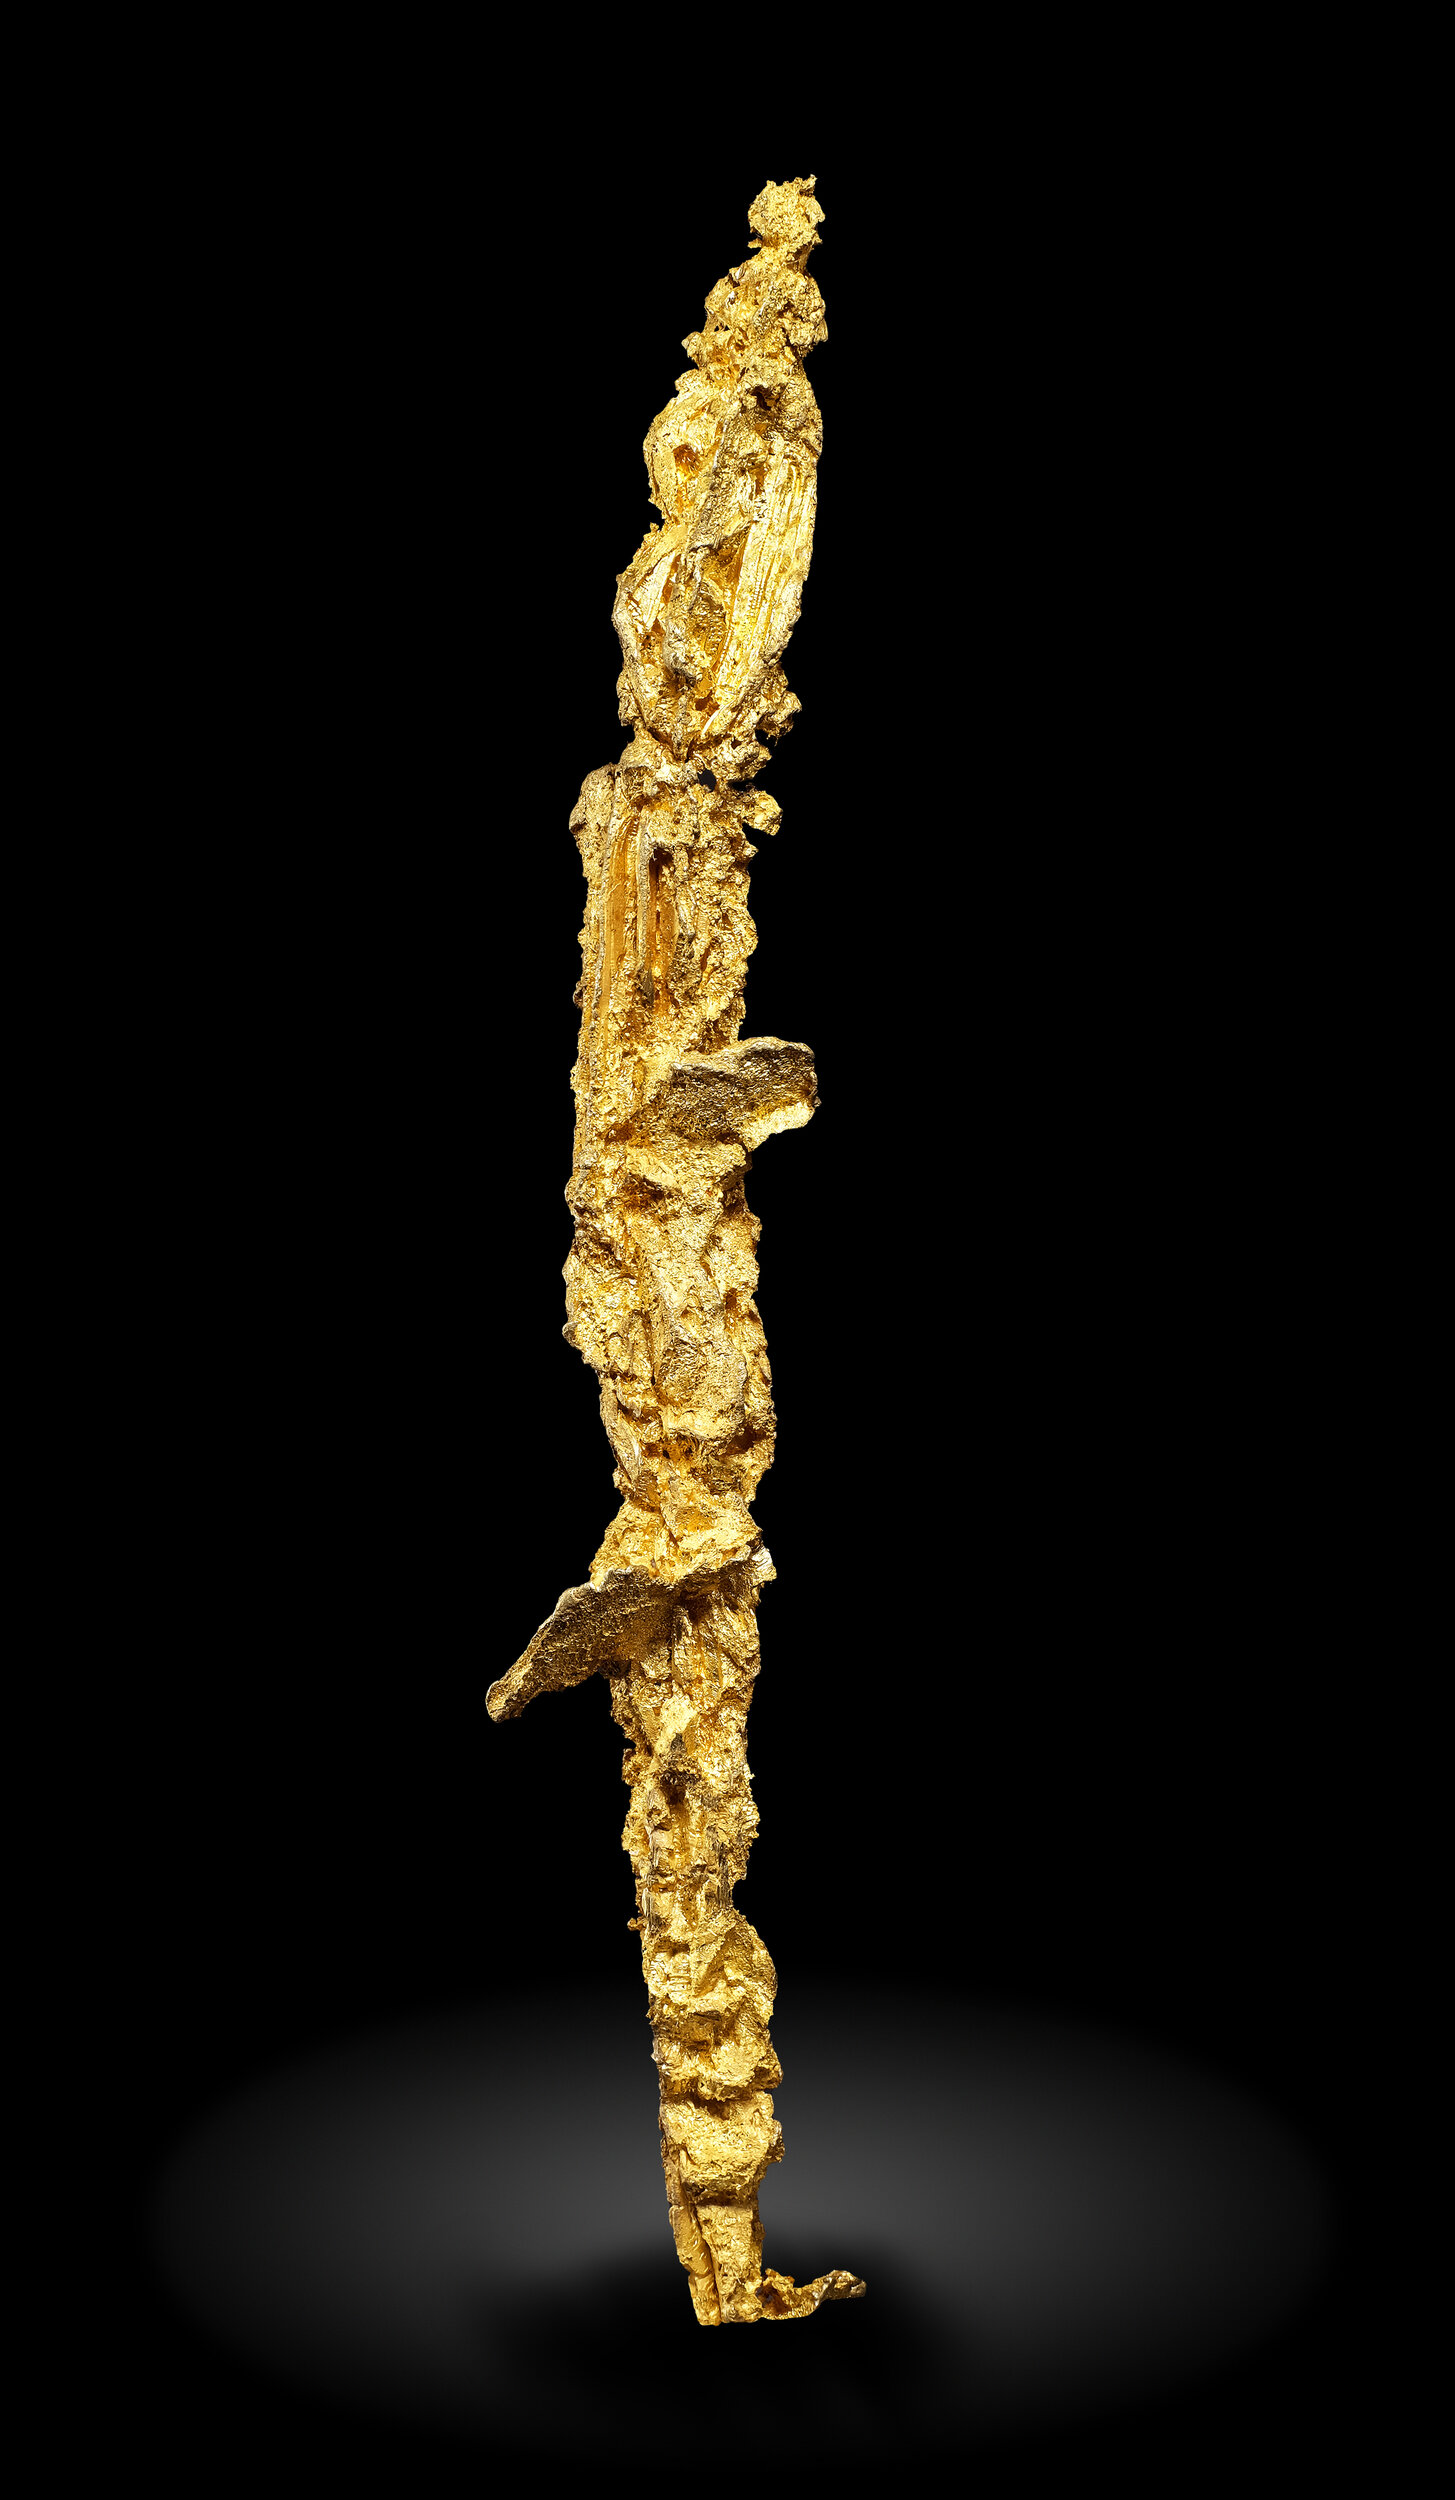 specimens/s_imagesAO0/Gold-EFR88AO0_0117_r.jpg